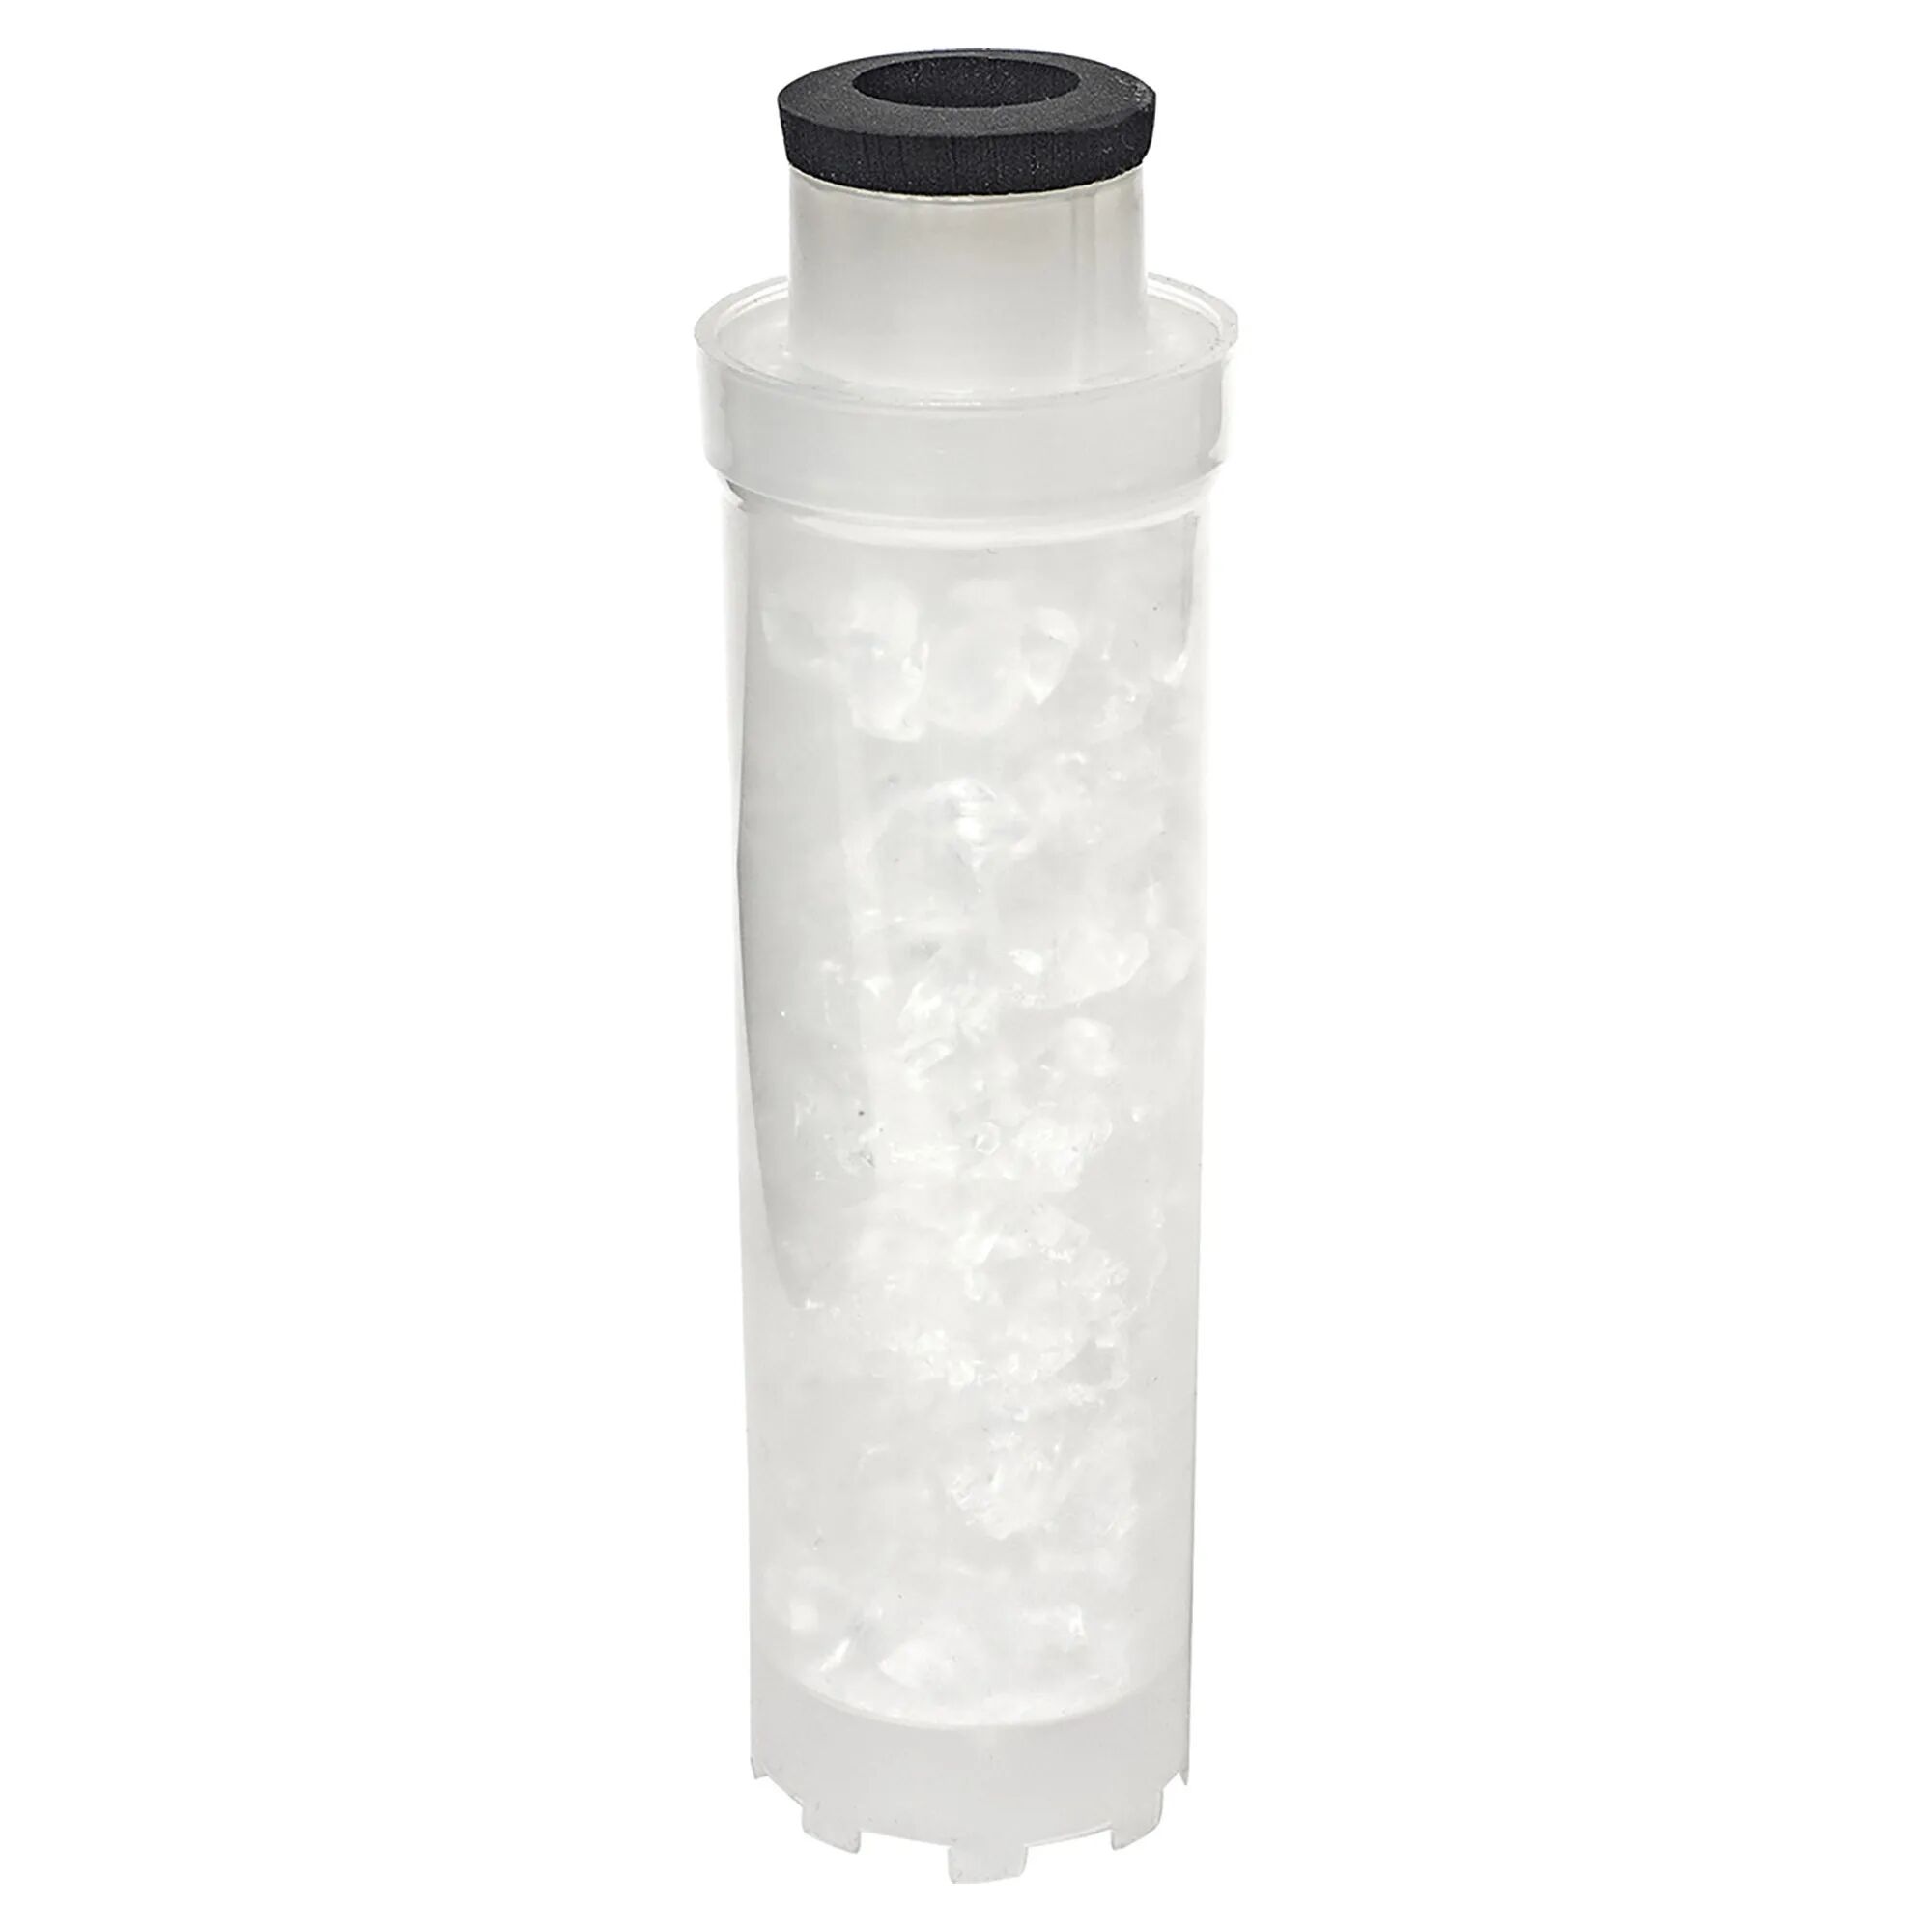 acquafiltra cartuccia filtrante aquafiltro 10 70 µ con sali polifosfati in cristalli anticalcare